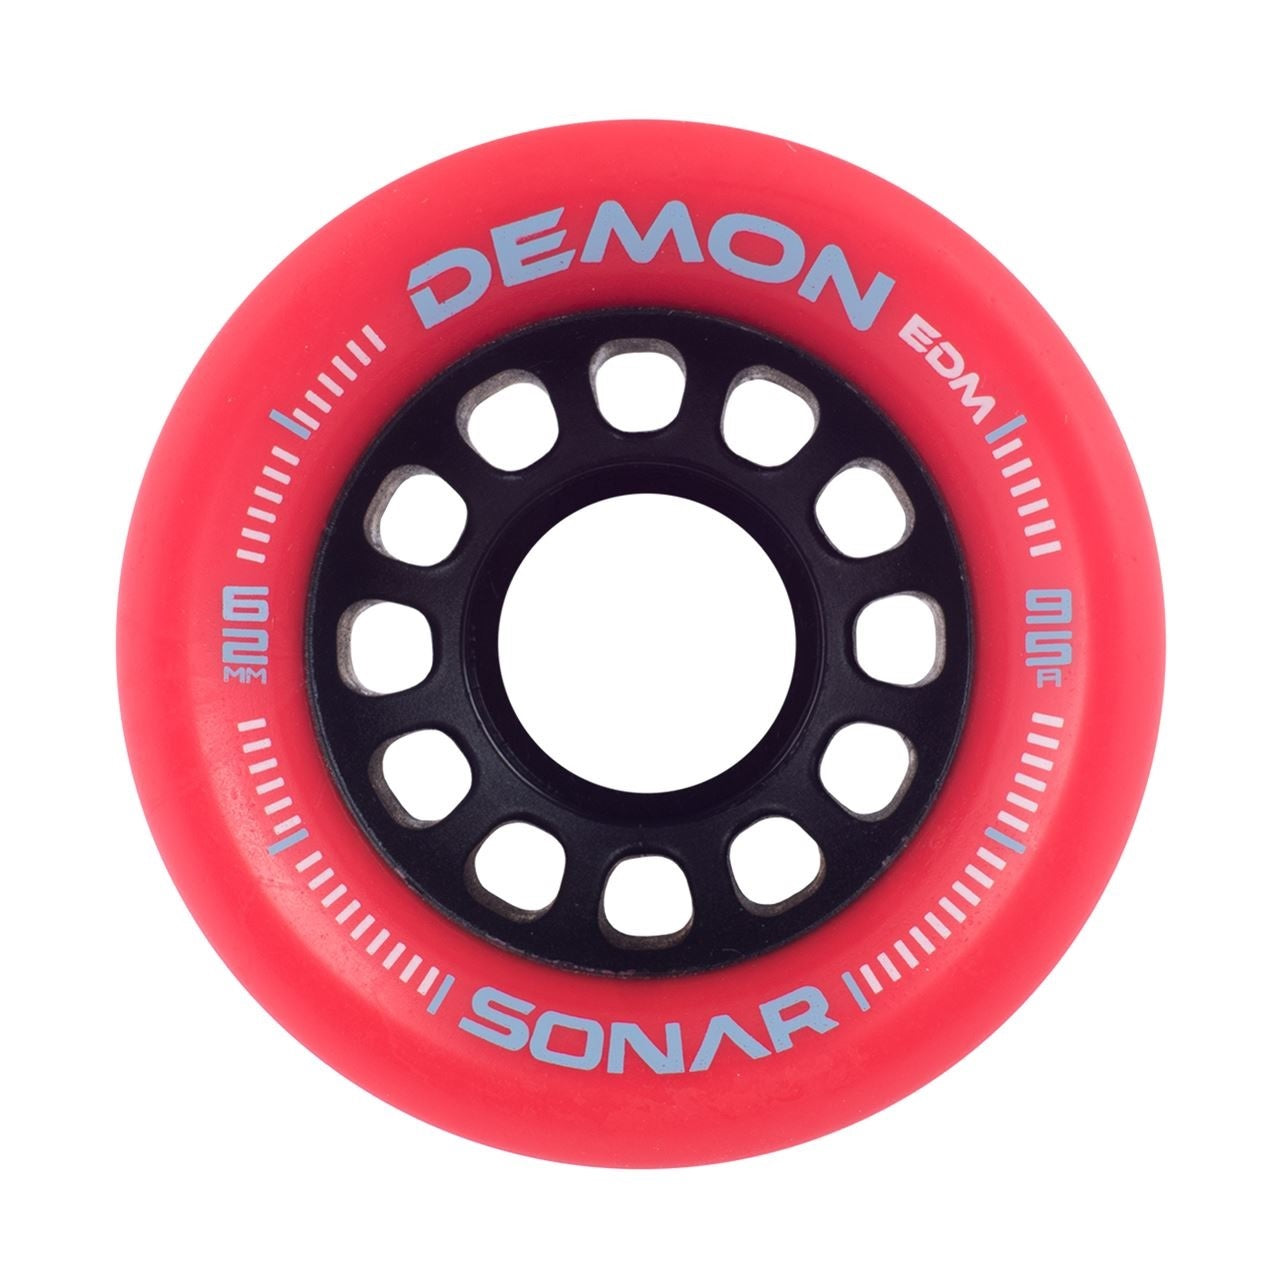 Sonar Demon EDM Red Roller Skate Wheels 62mm 95a - Set of 4